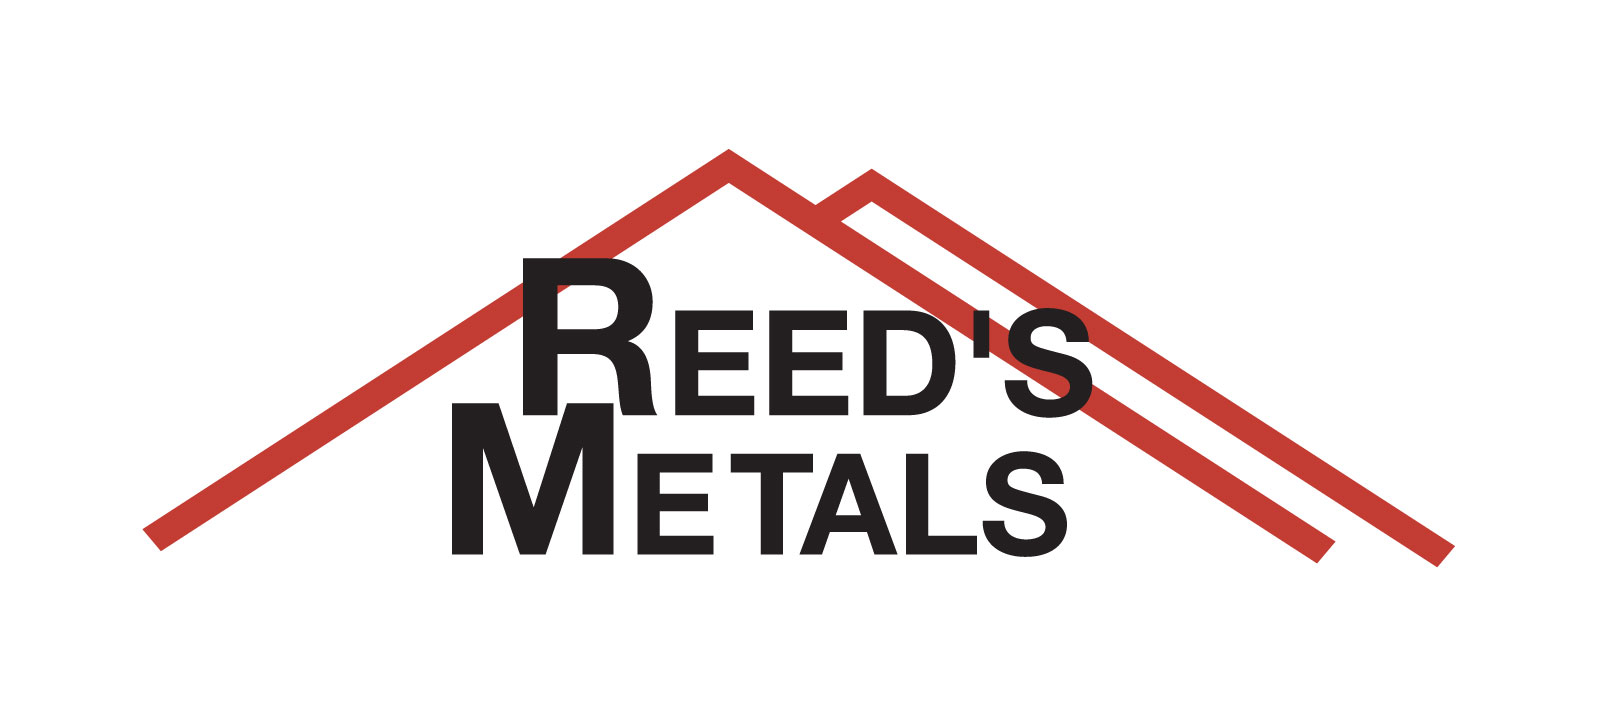 Reeds Metals red black base logo 1 002